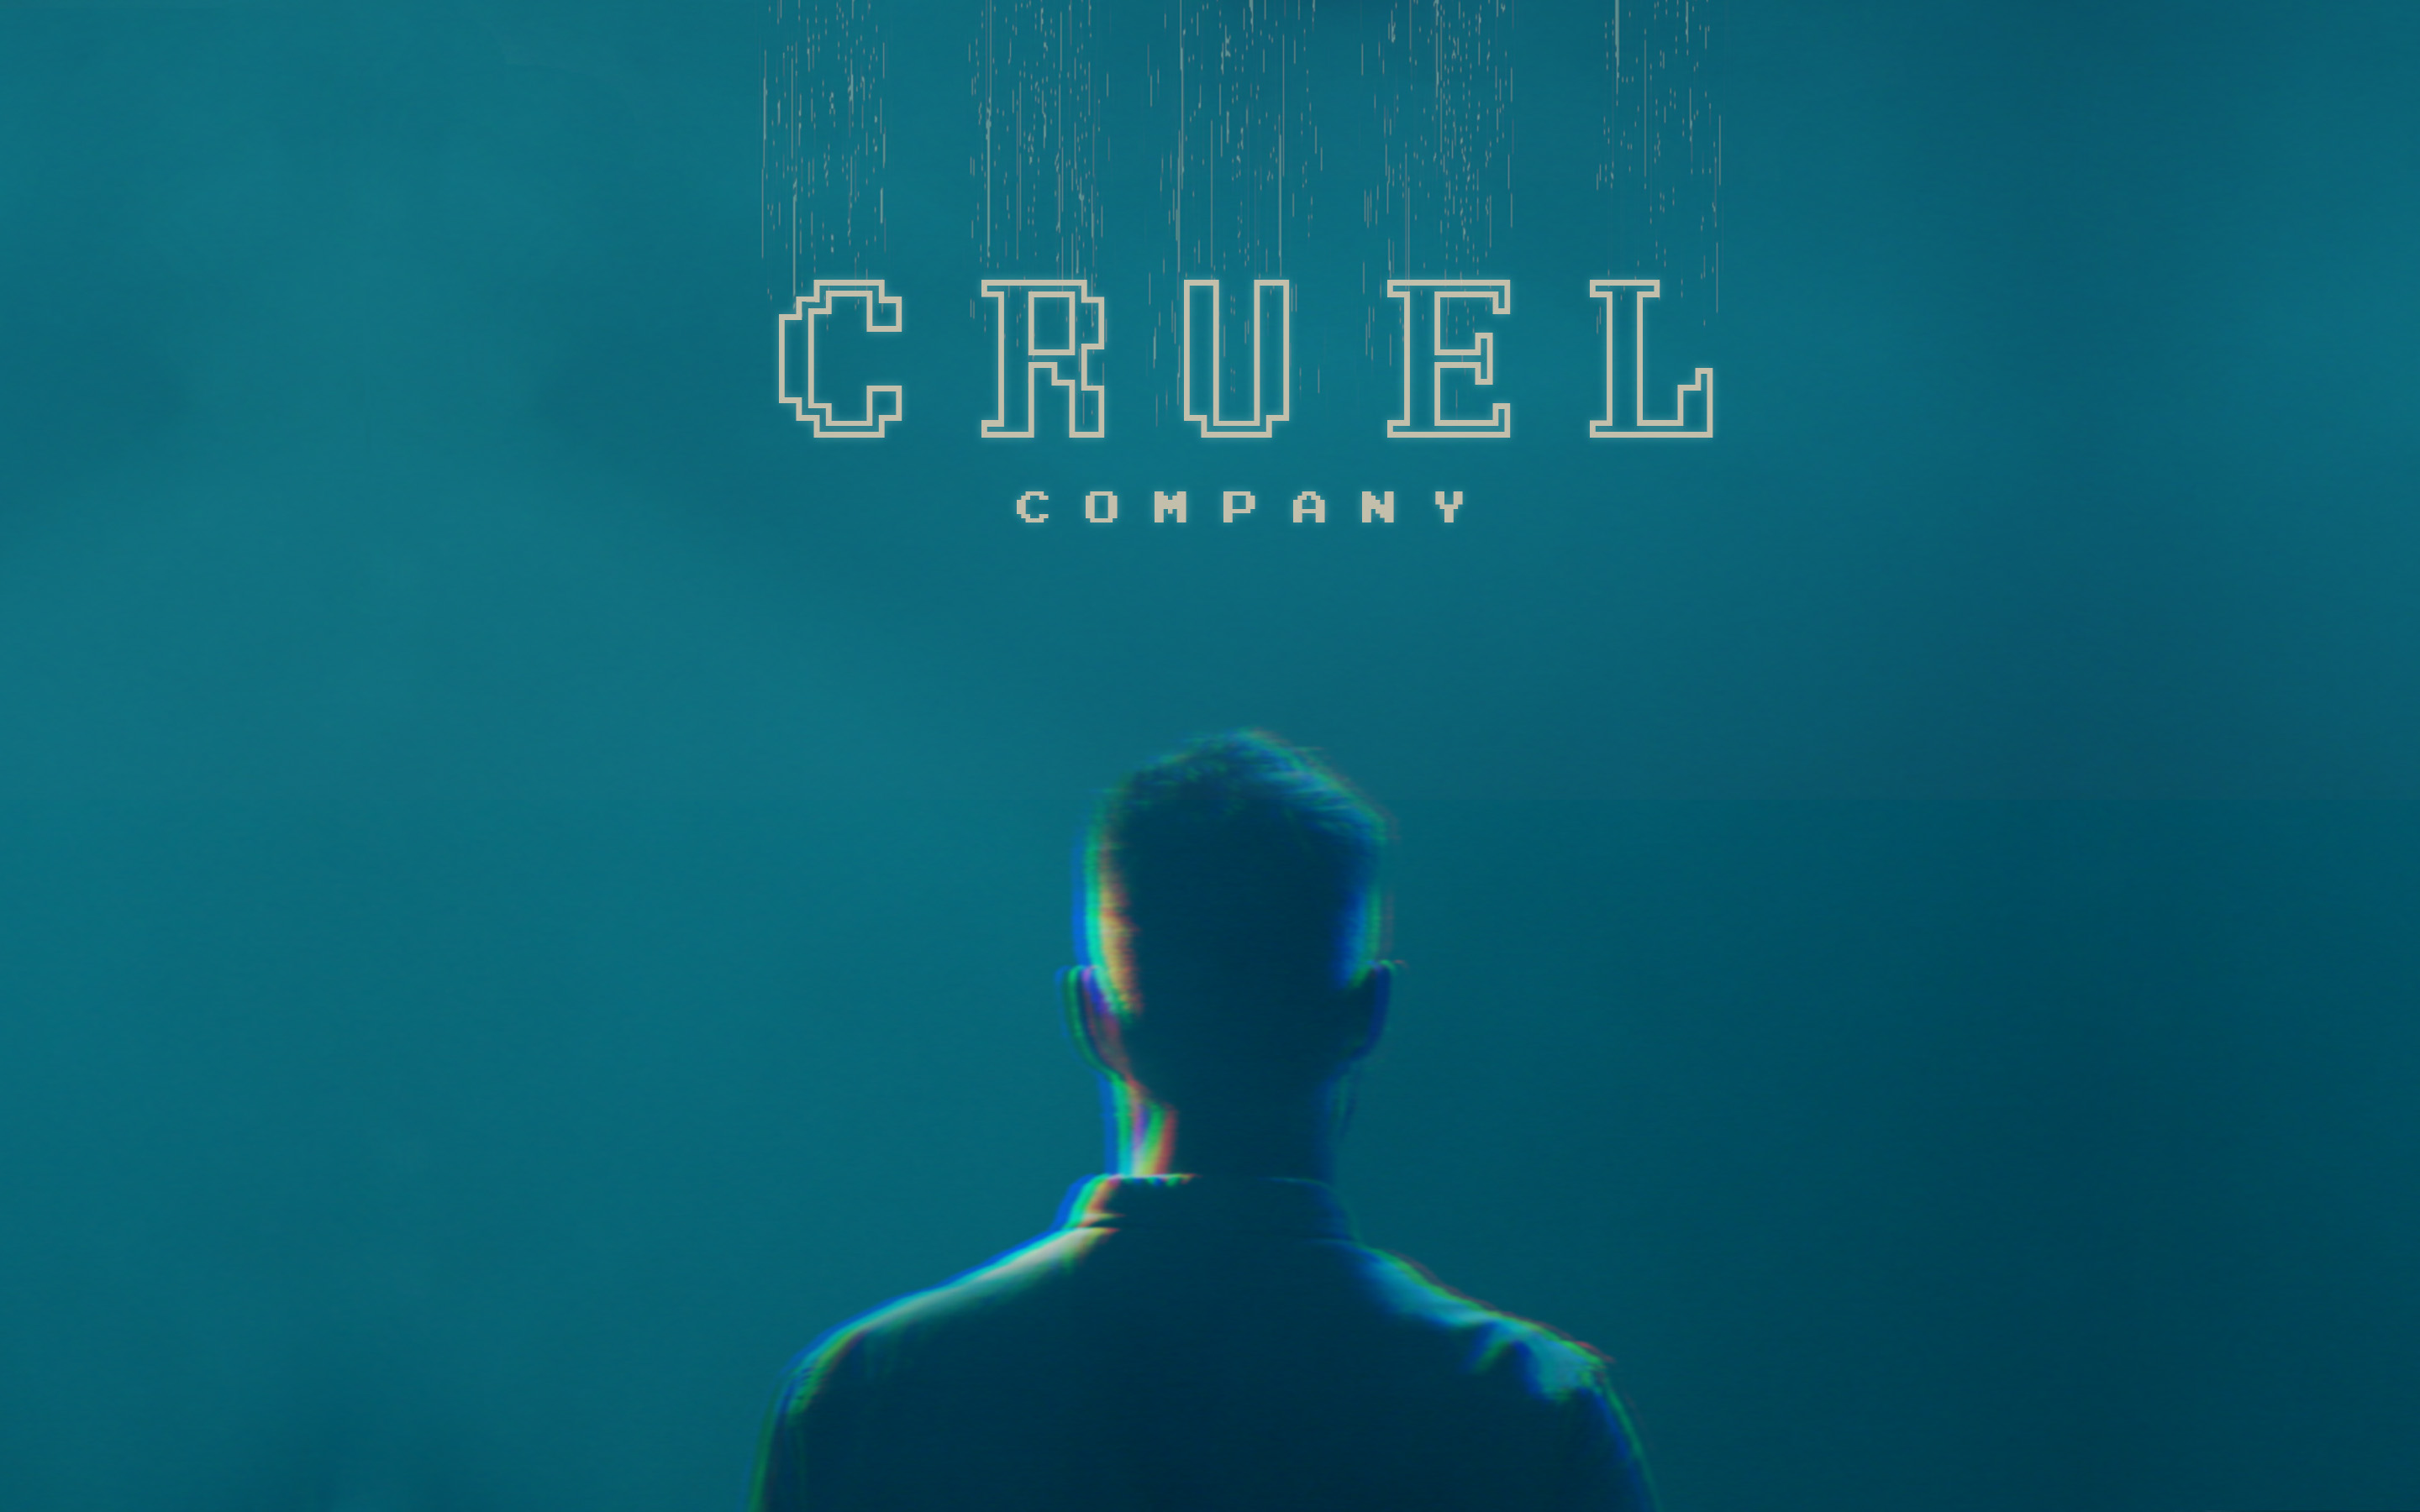 Cruel Company